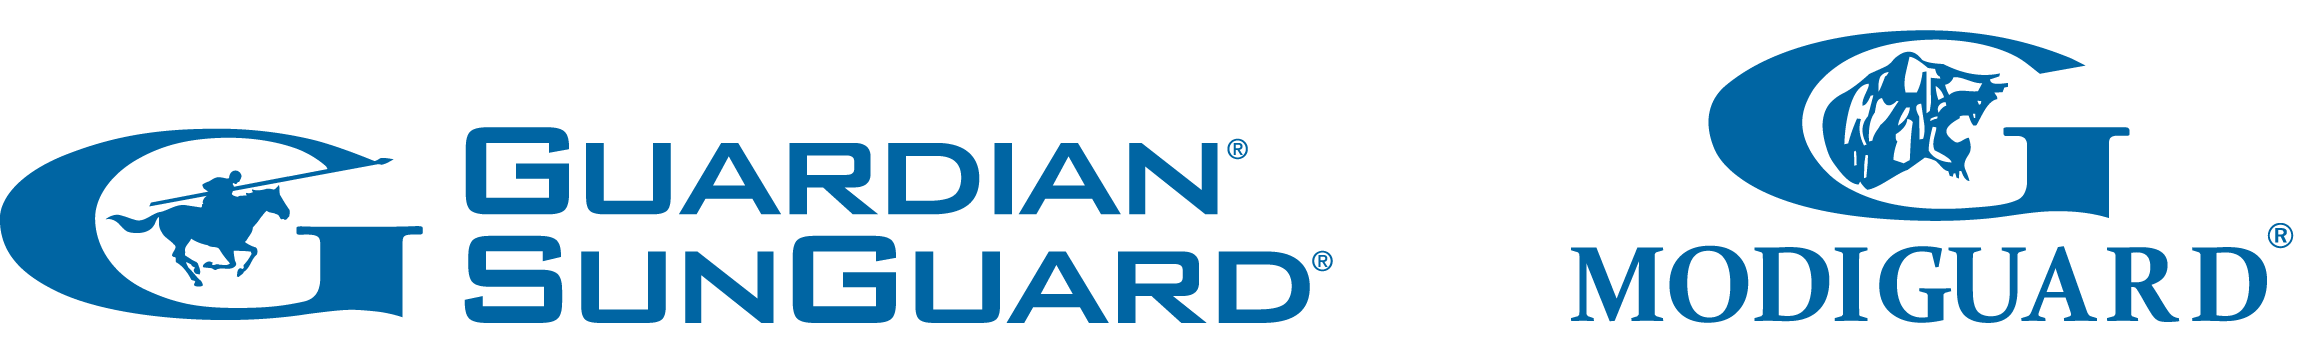 Gujarat Guardian Ltd